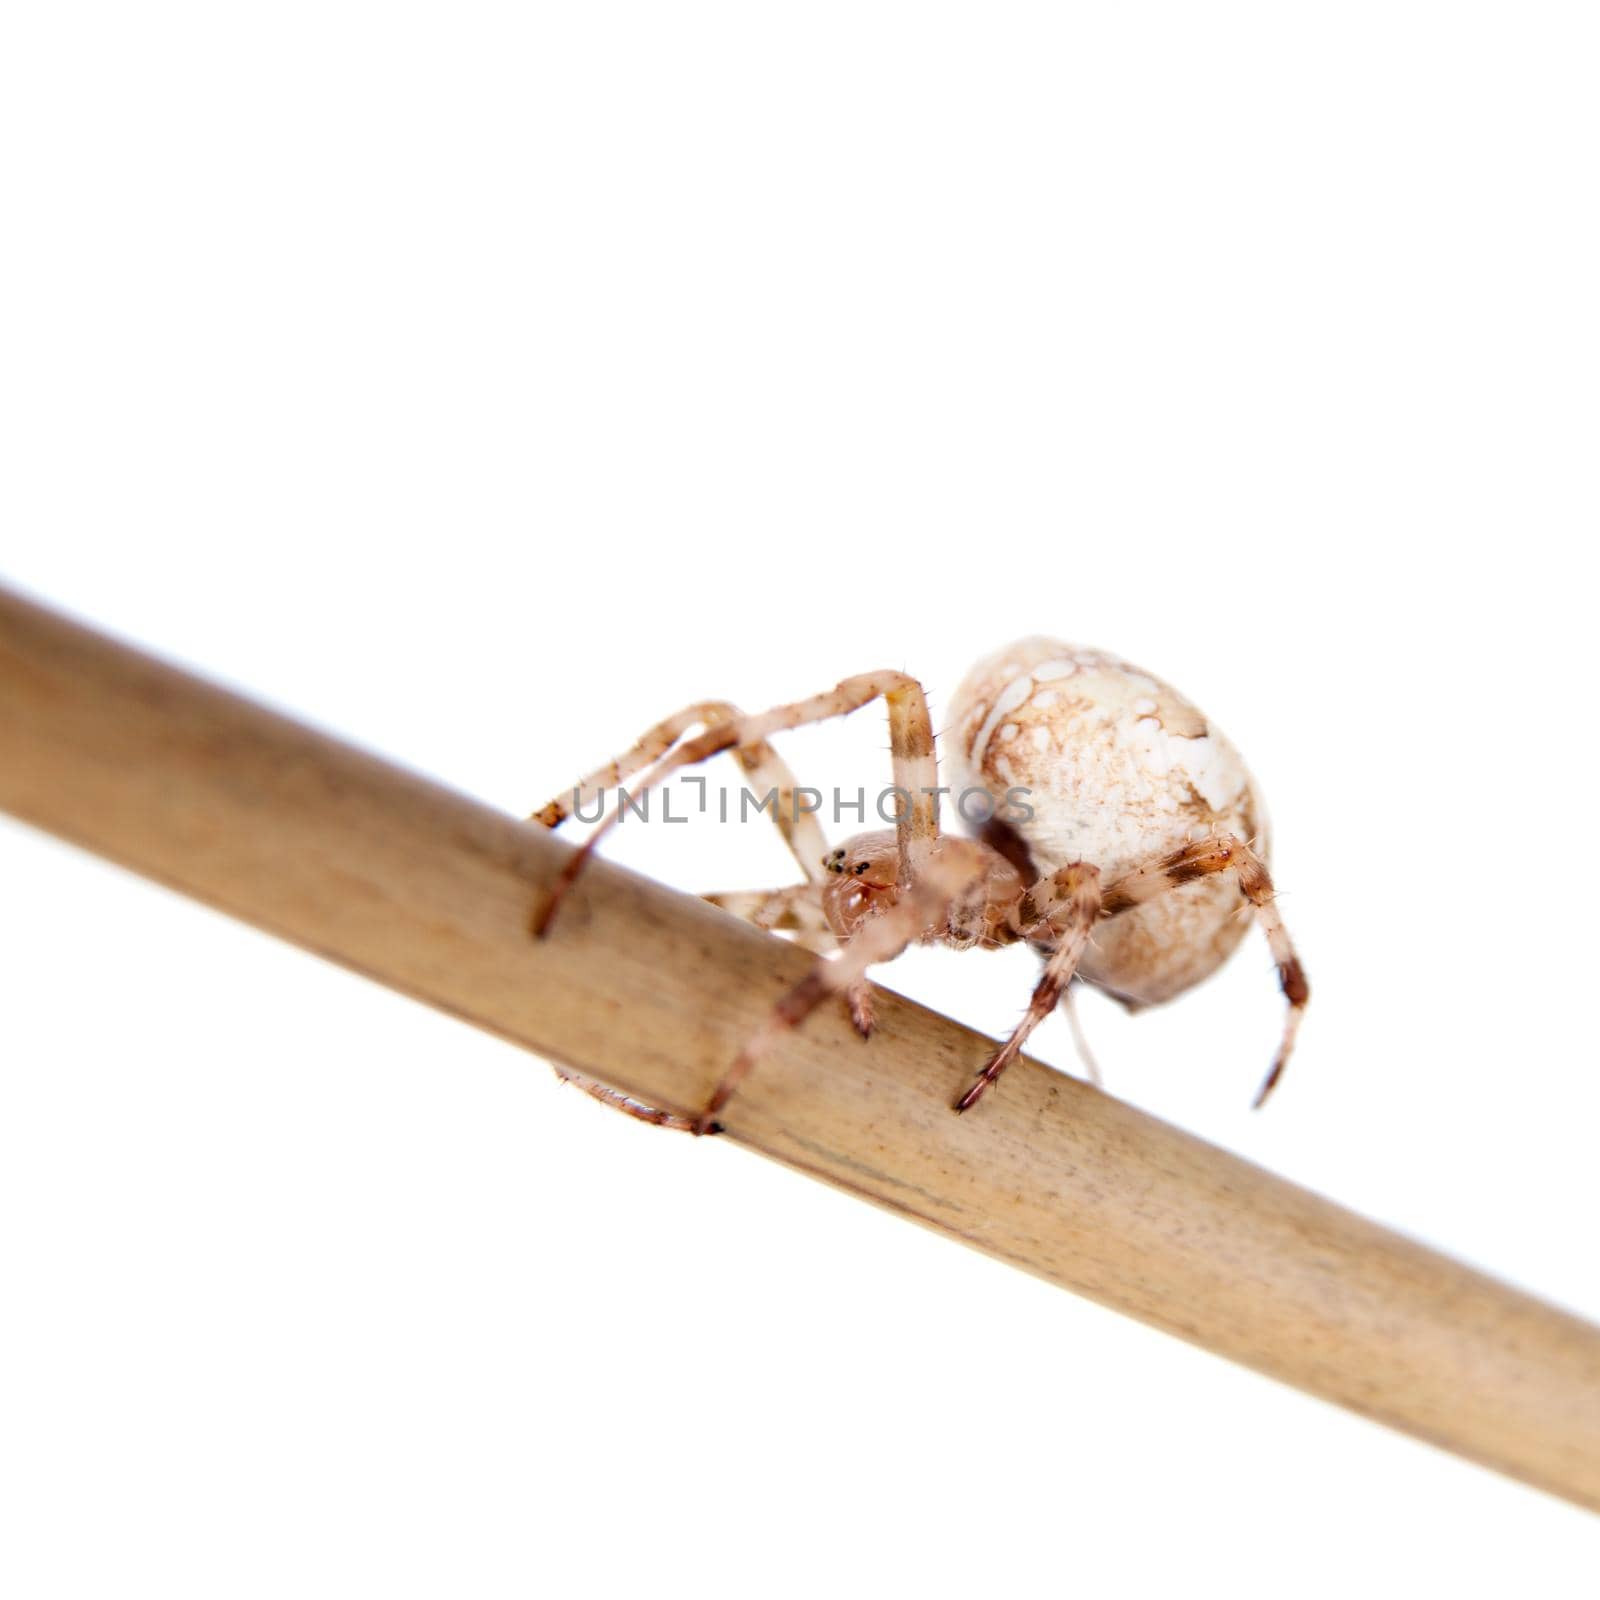 The european garden spider, araneus diadematus, female, isolated on white background